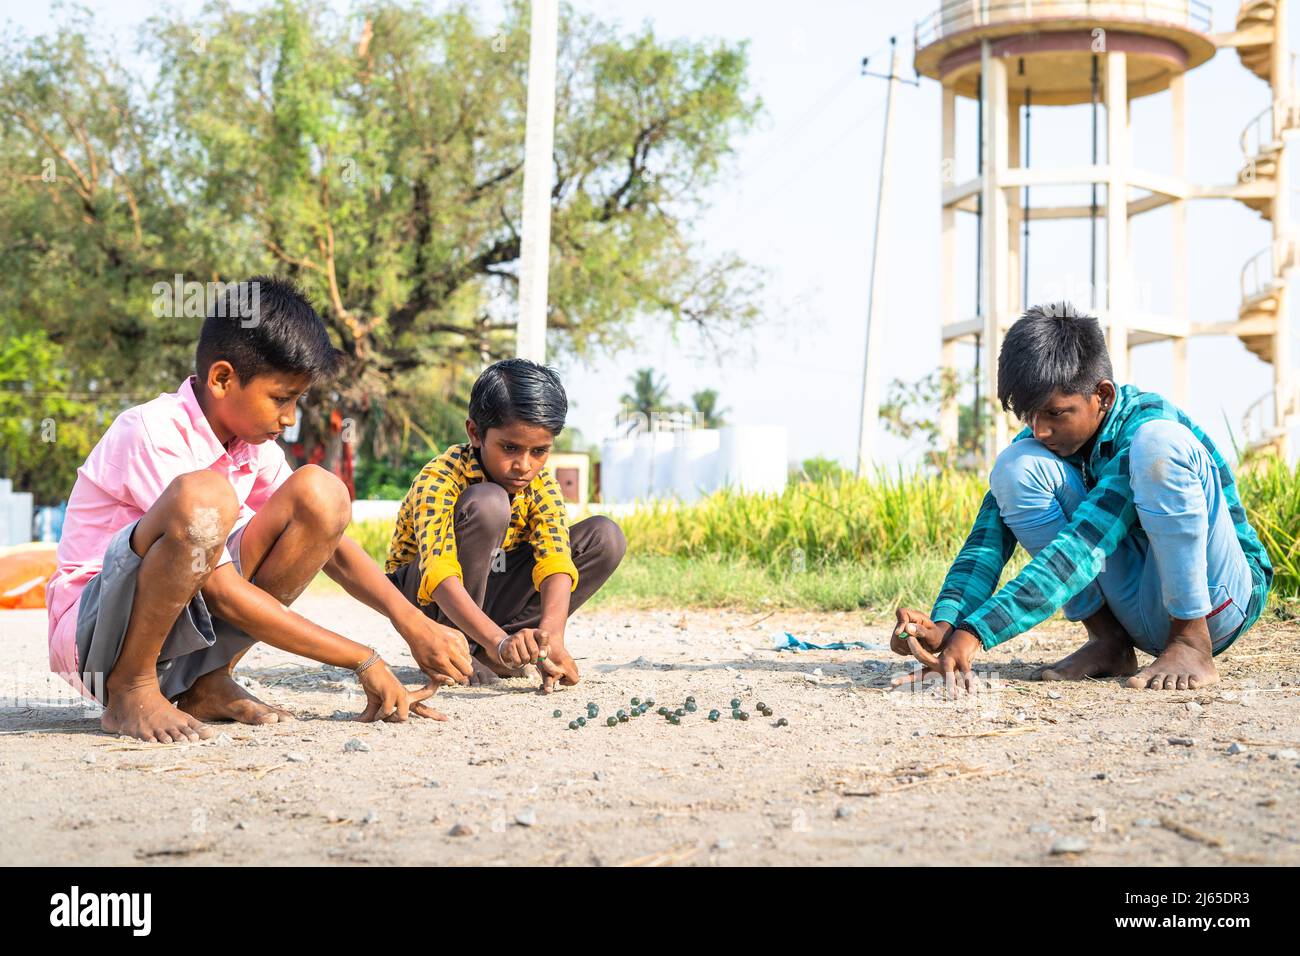 Los niños de la aldea india que juegan goli o mármoles en el campo de arroz cercano - concepto de juego tradicional, vacaciones de verano y actividades de ocio. Foto de stock